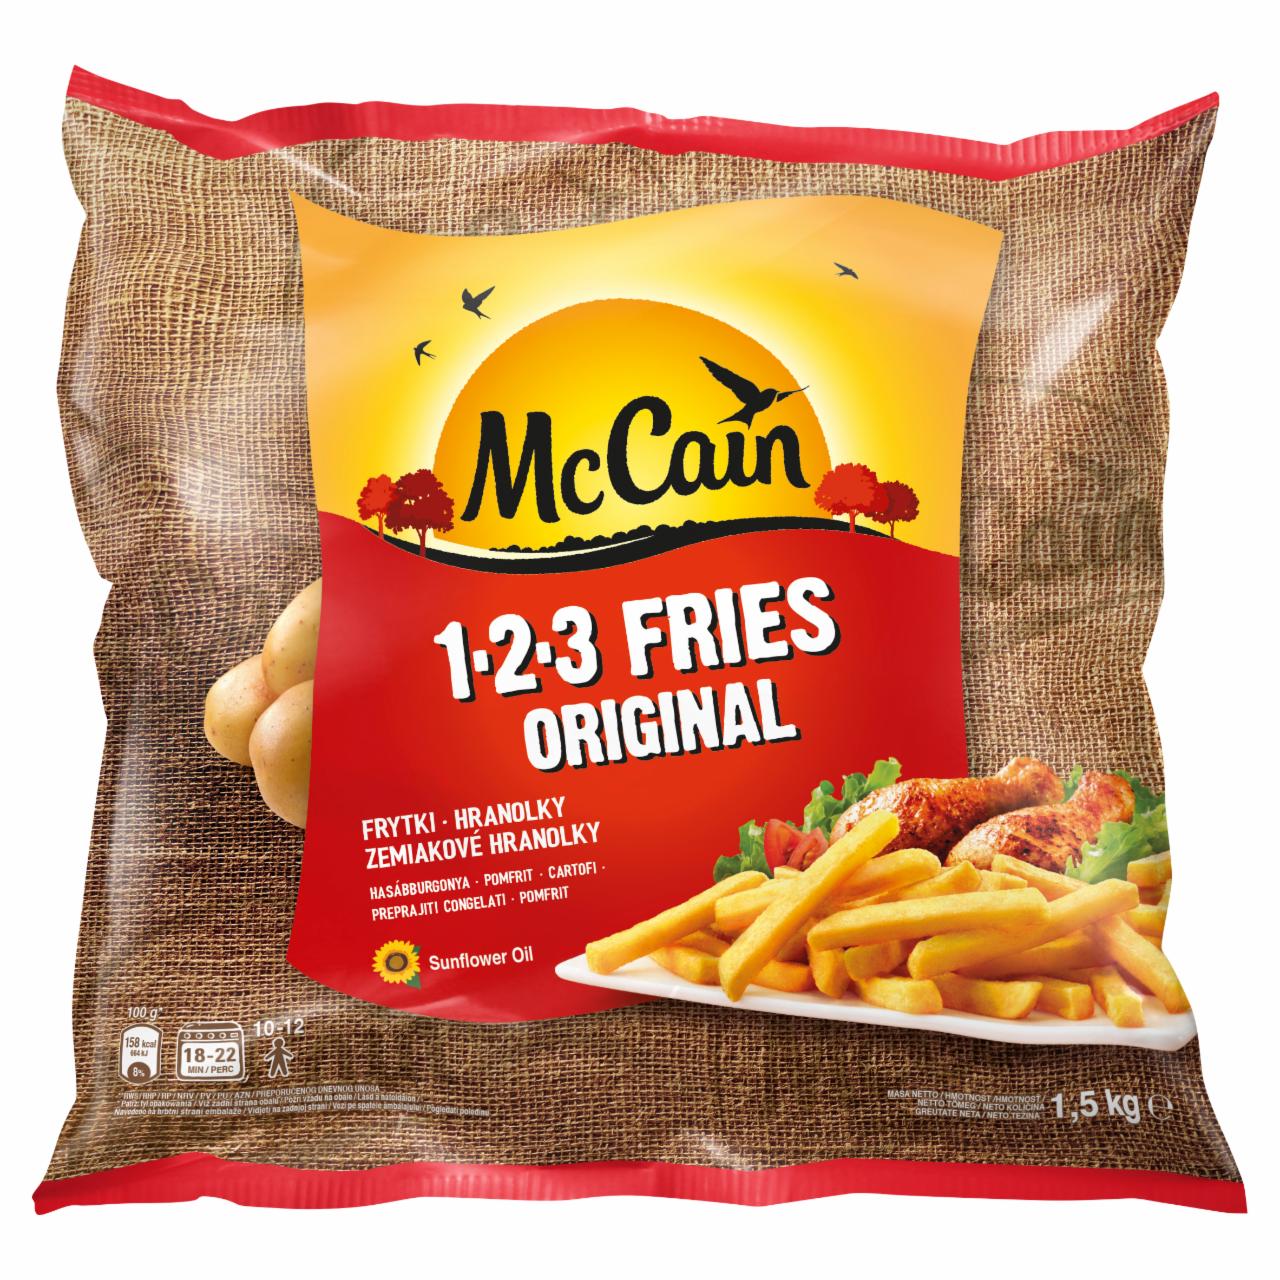 Zdjęcia - McCain 1.2.3 Fries Original Frytki proste 1,5 kg